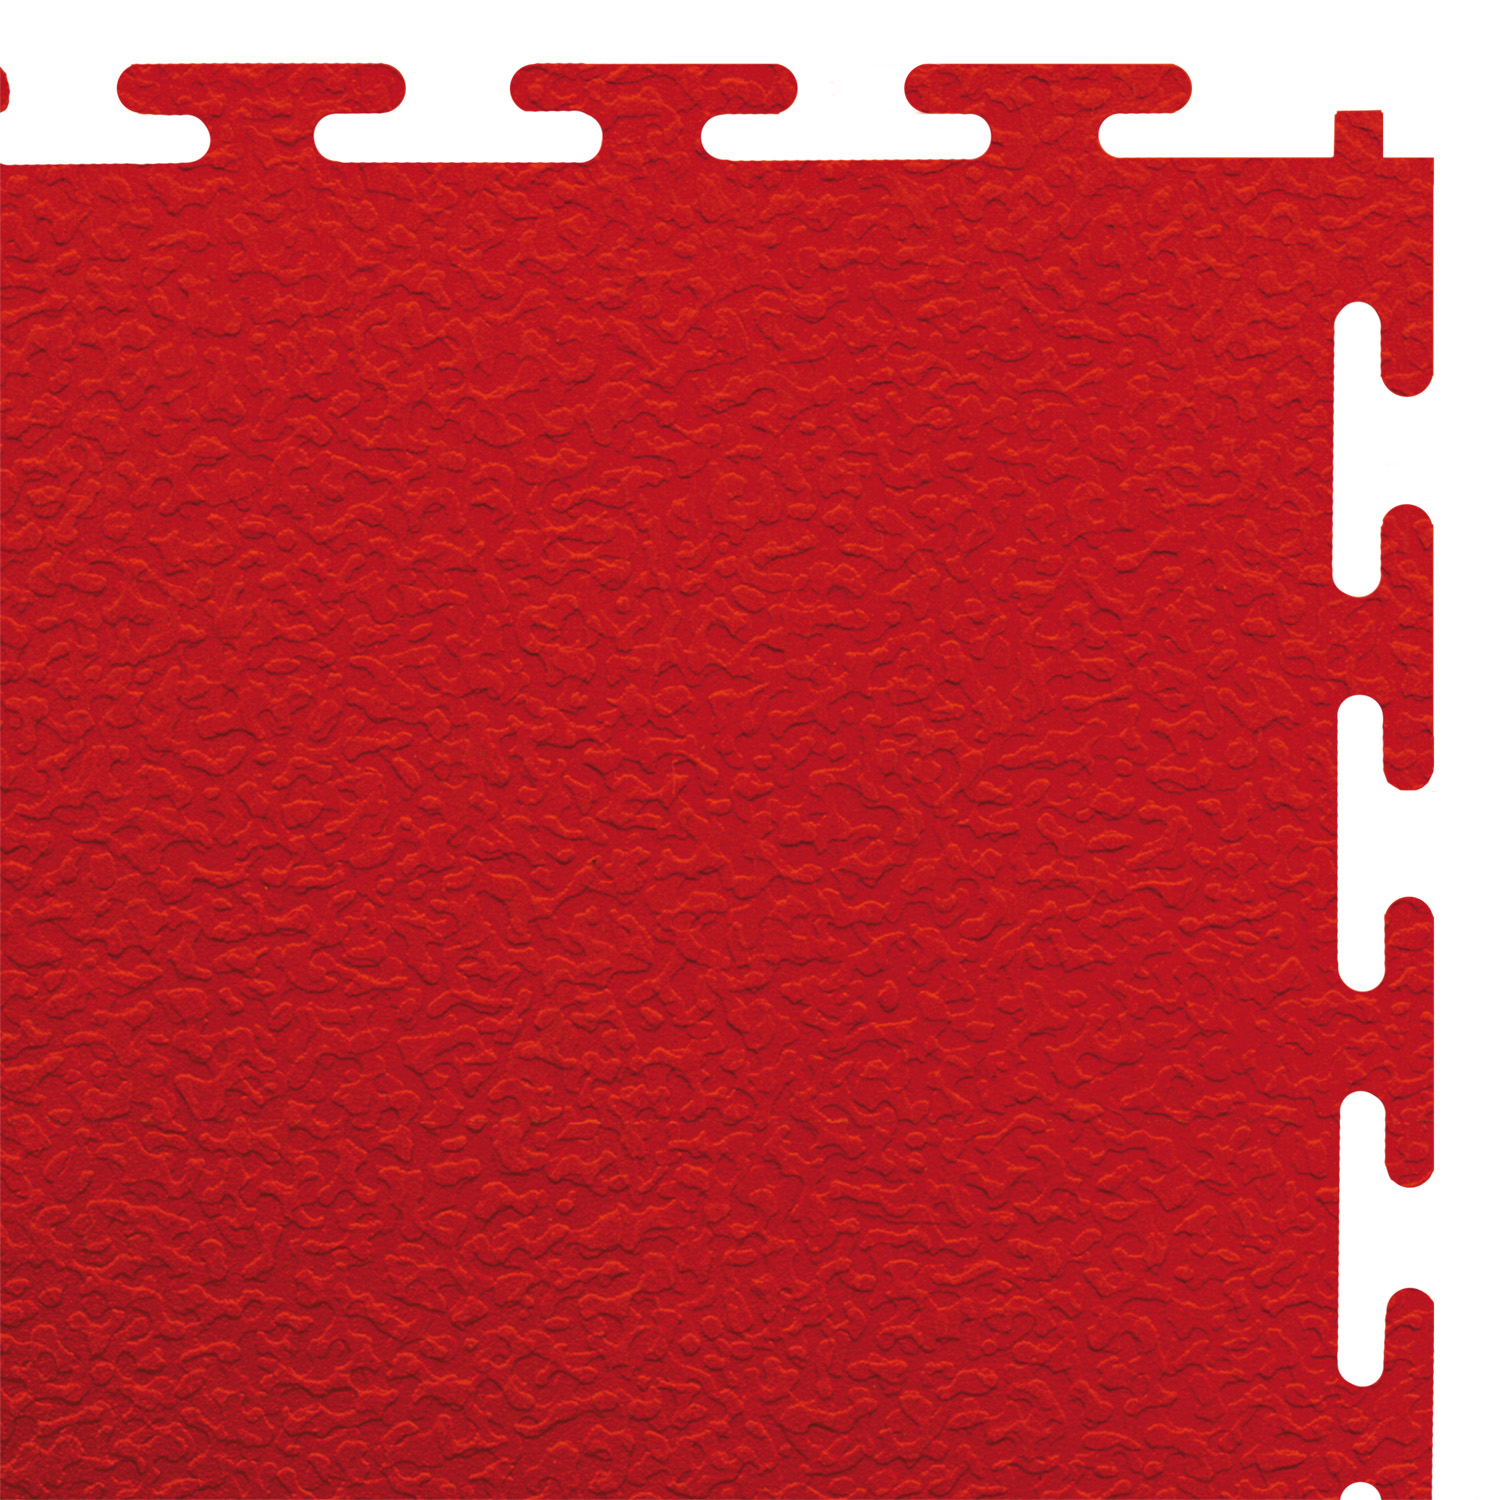 Standard floor tile (red/textured)